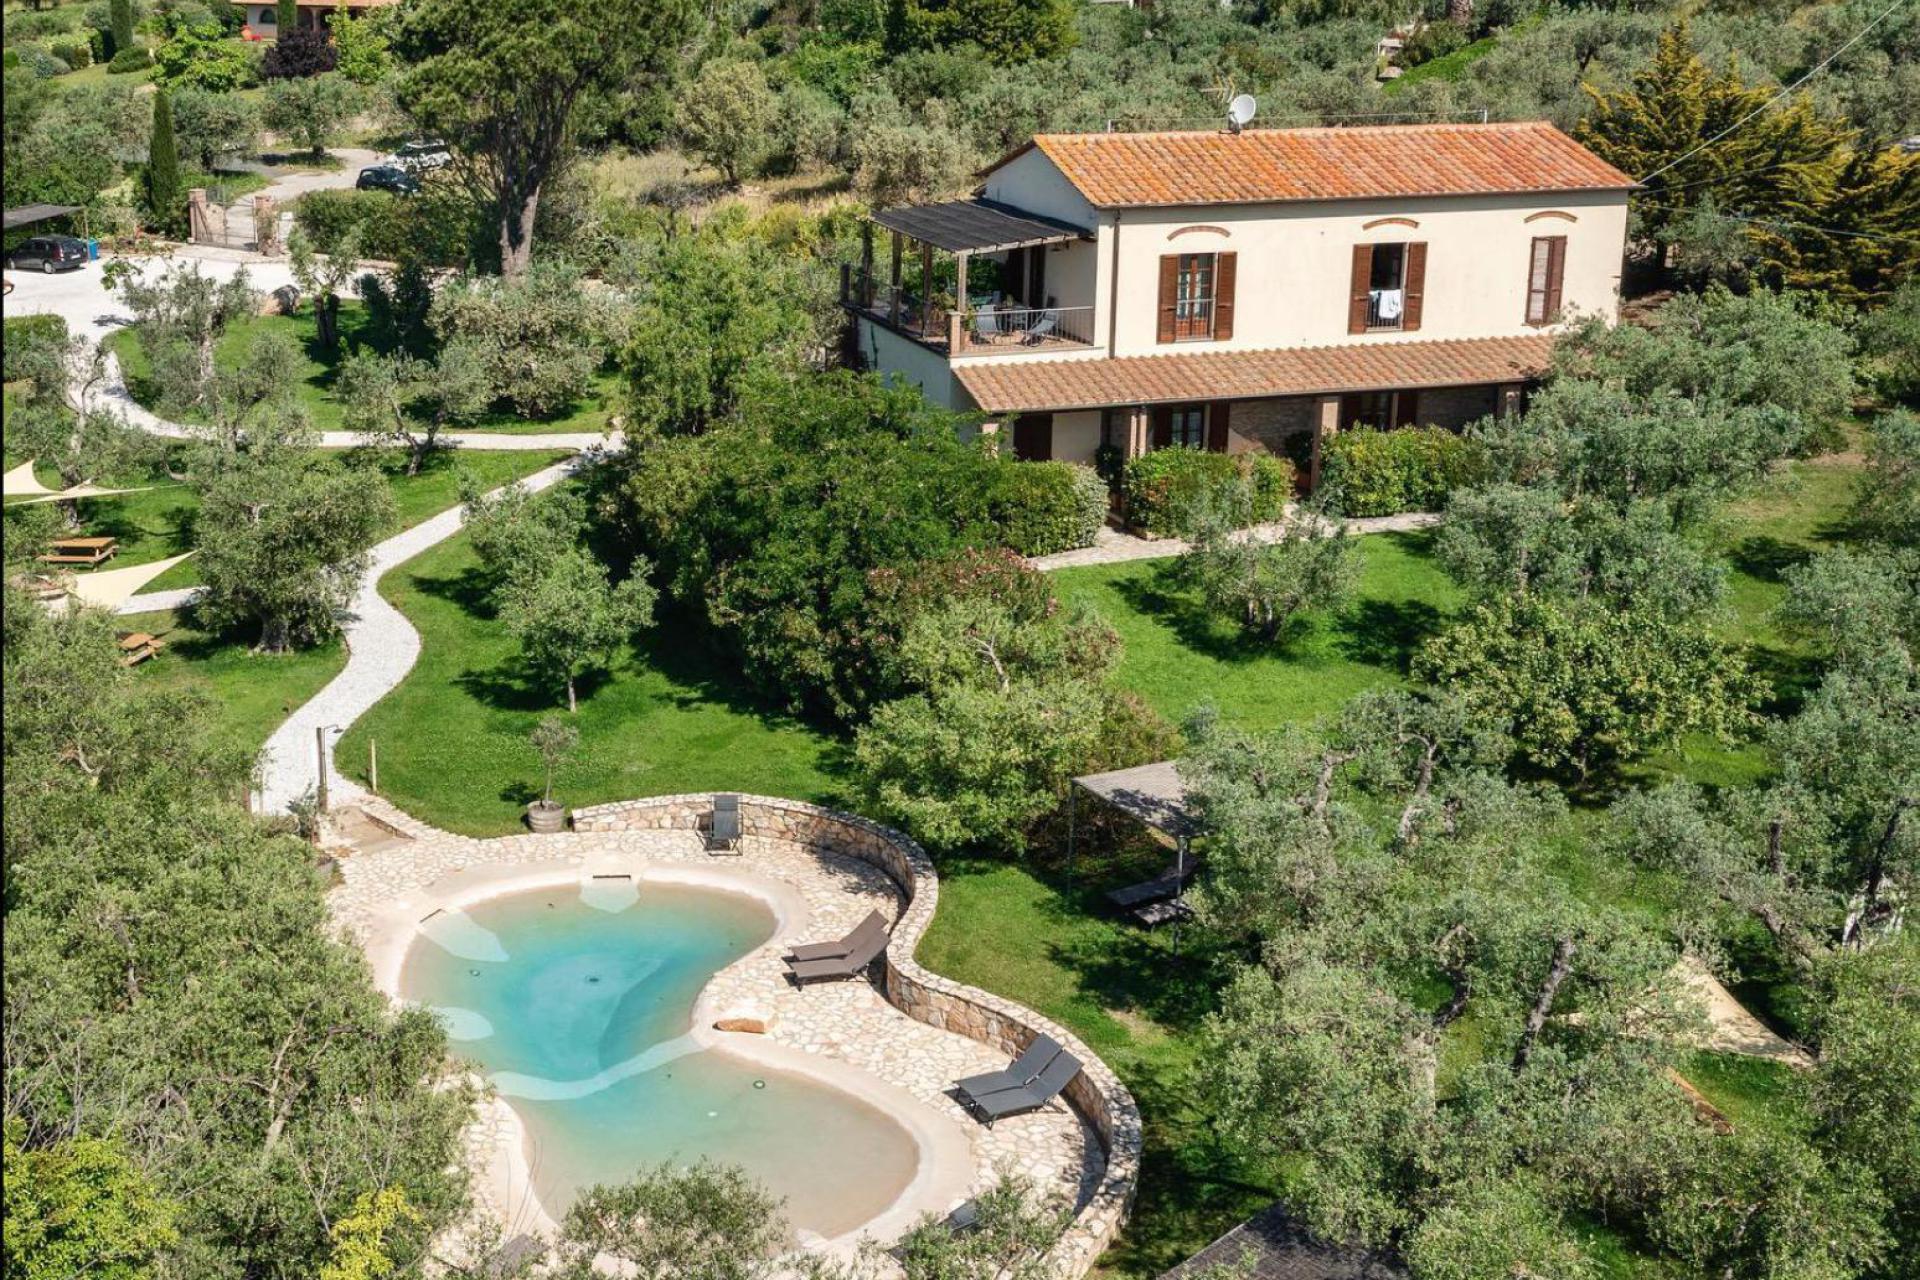 Agriturismo Toskana mit 6 Ferienwohnungen, zwischen Olivenbäumen, strandnah